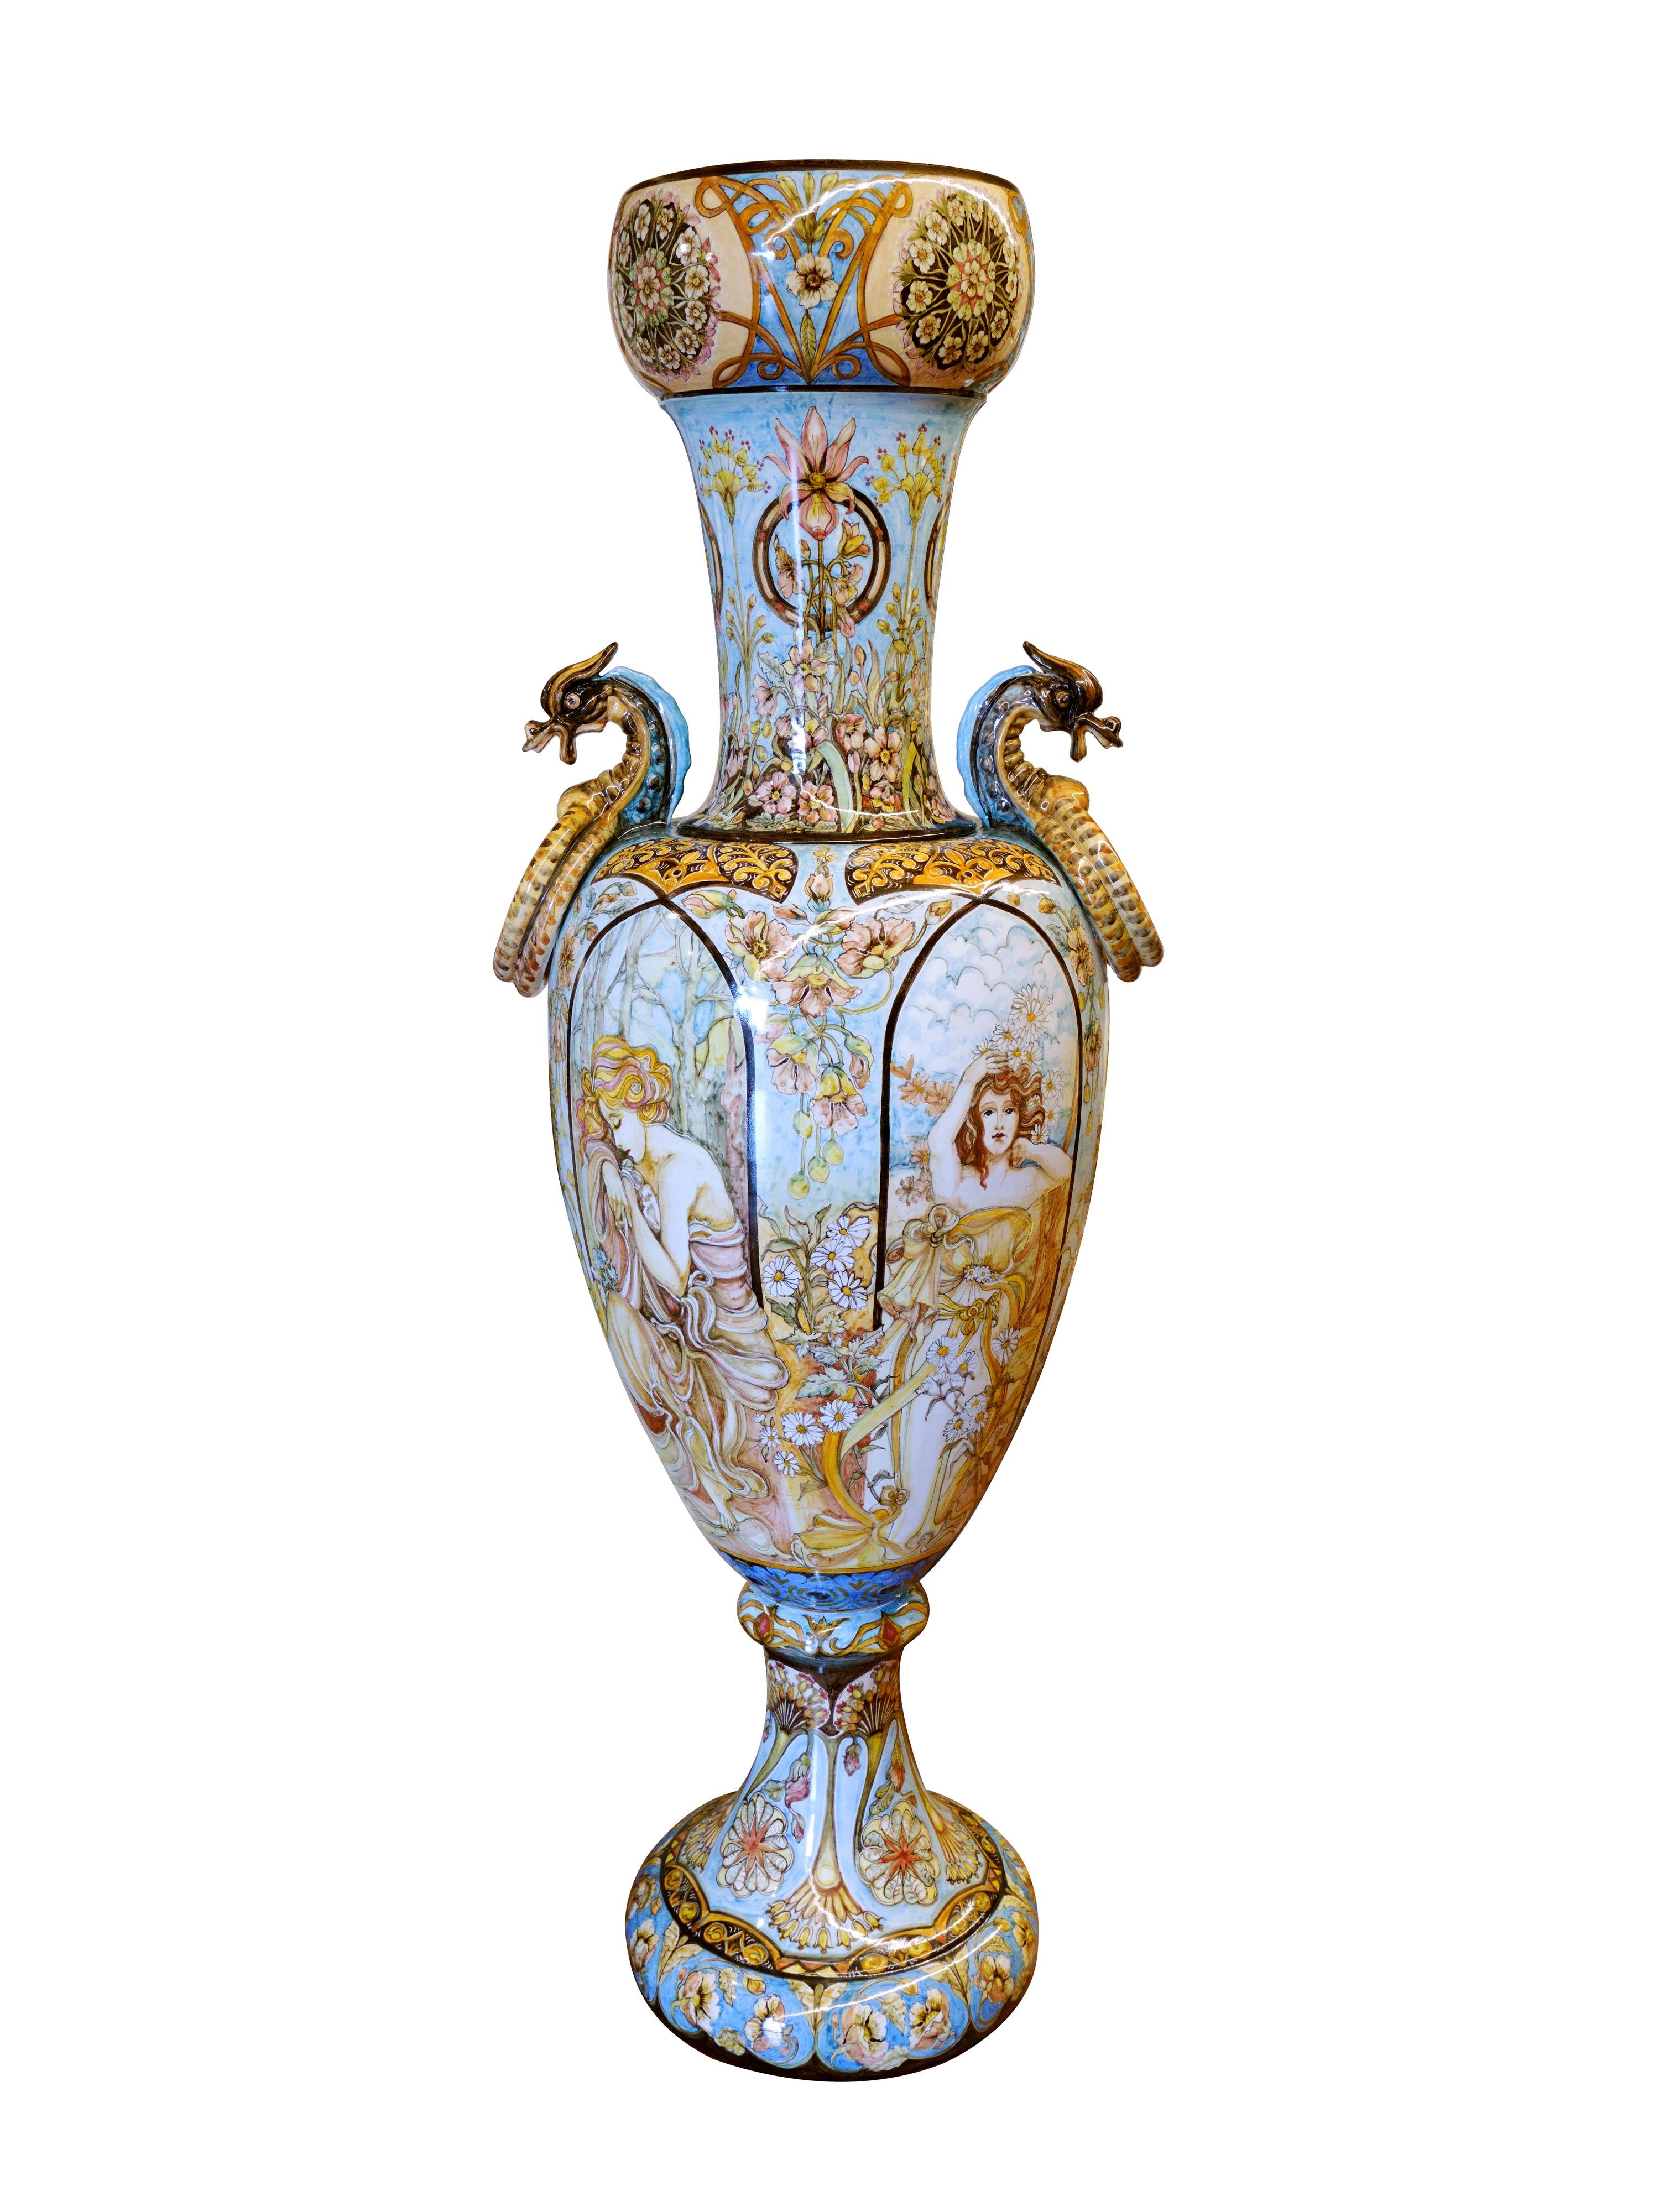 Amphore majestueuse en majolique émaillée, fabriquée et peinte à la main dans le centre de l'Italie. Sur l'amphore sont représentées, avec force détails, les quatre saisons personnifiées par de gracieuses femmes entourées d'éléments floraux. Toute